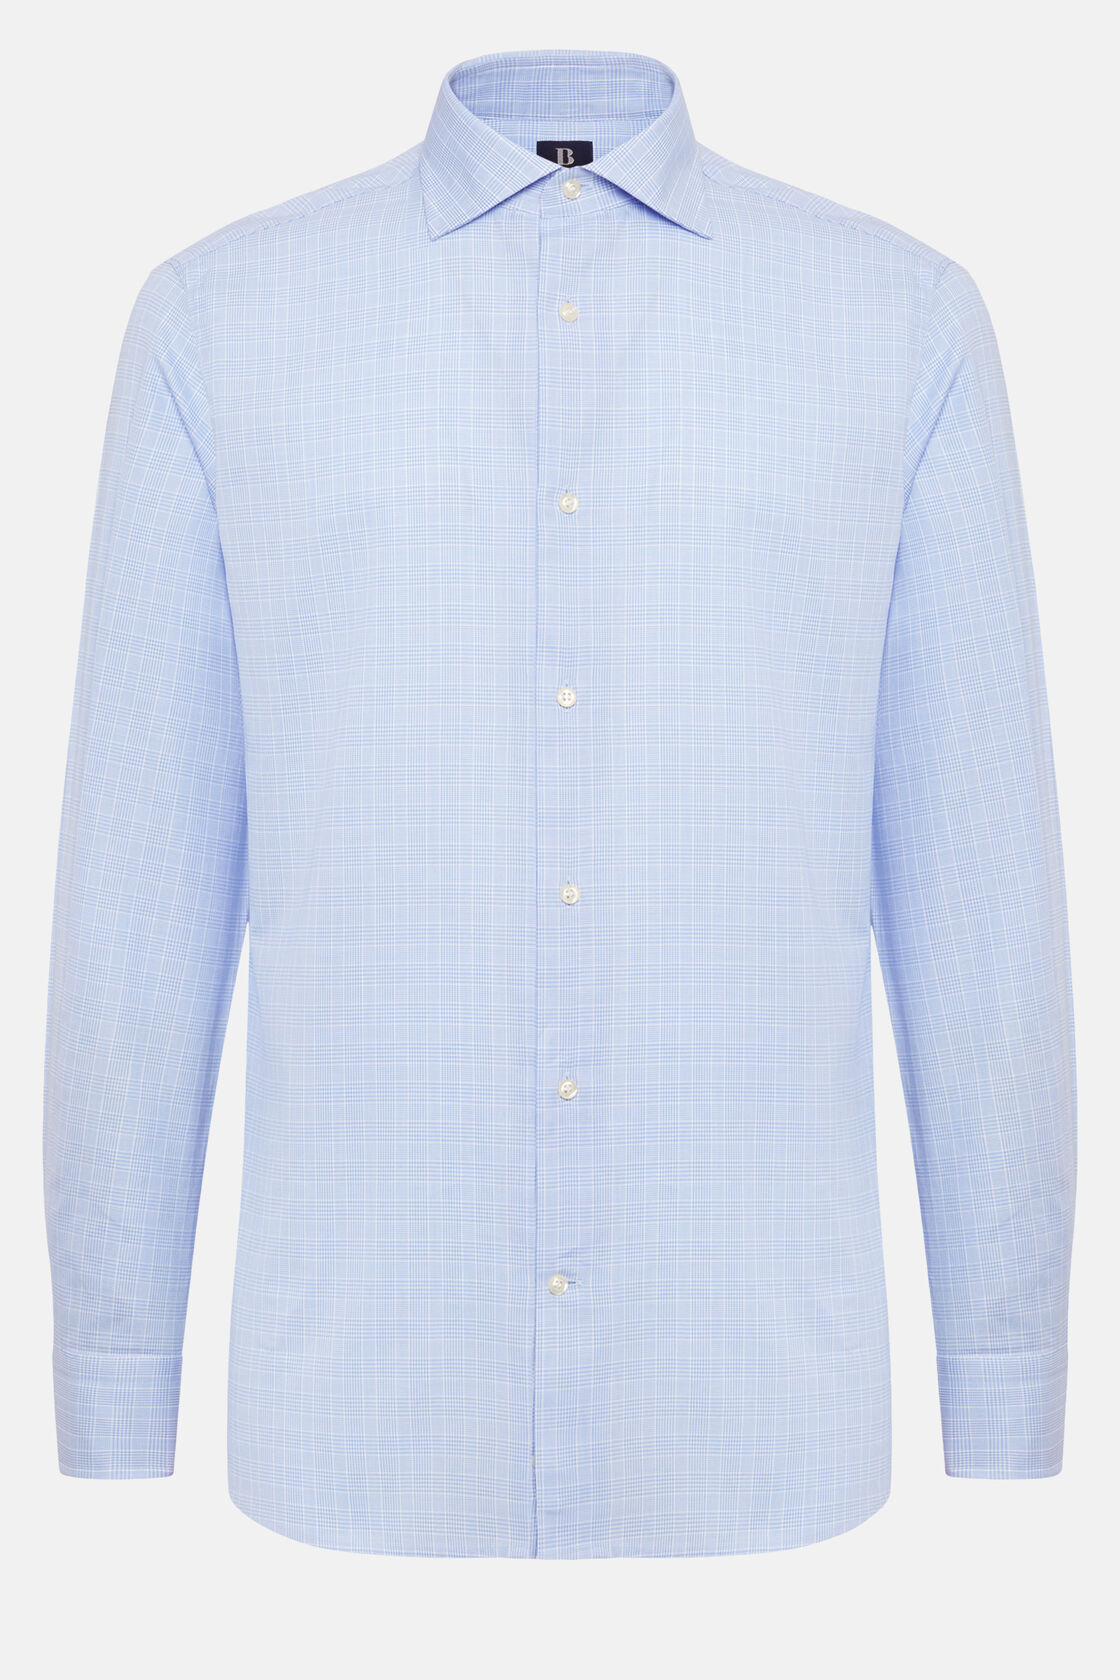 Camicia Twill di Cotone collo Windosr, Azzurro, hi-res